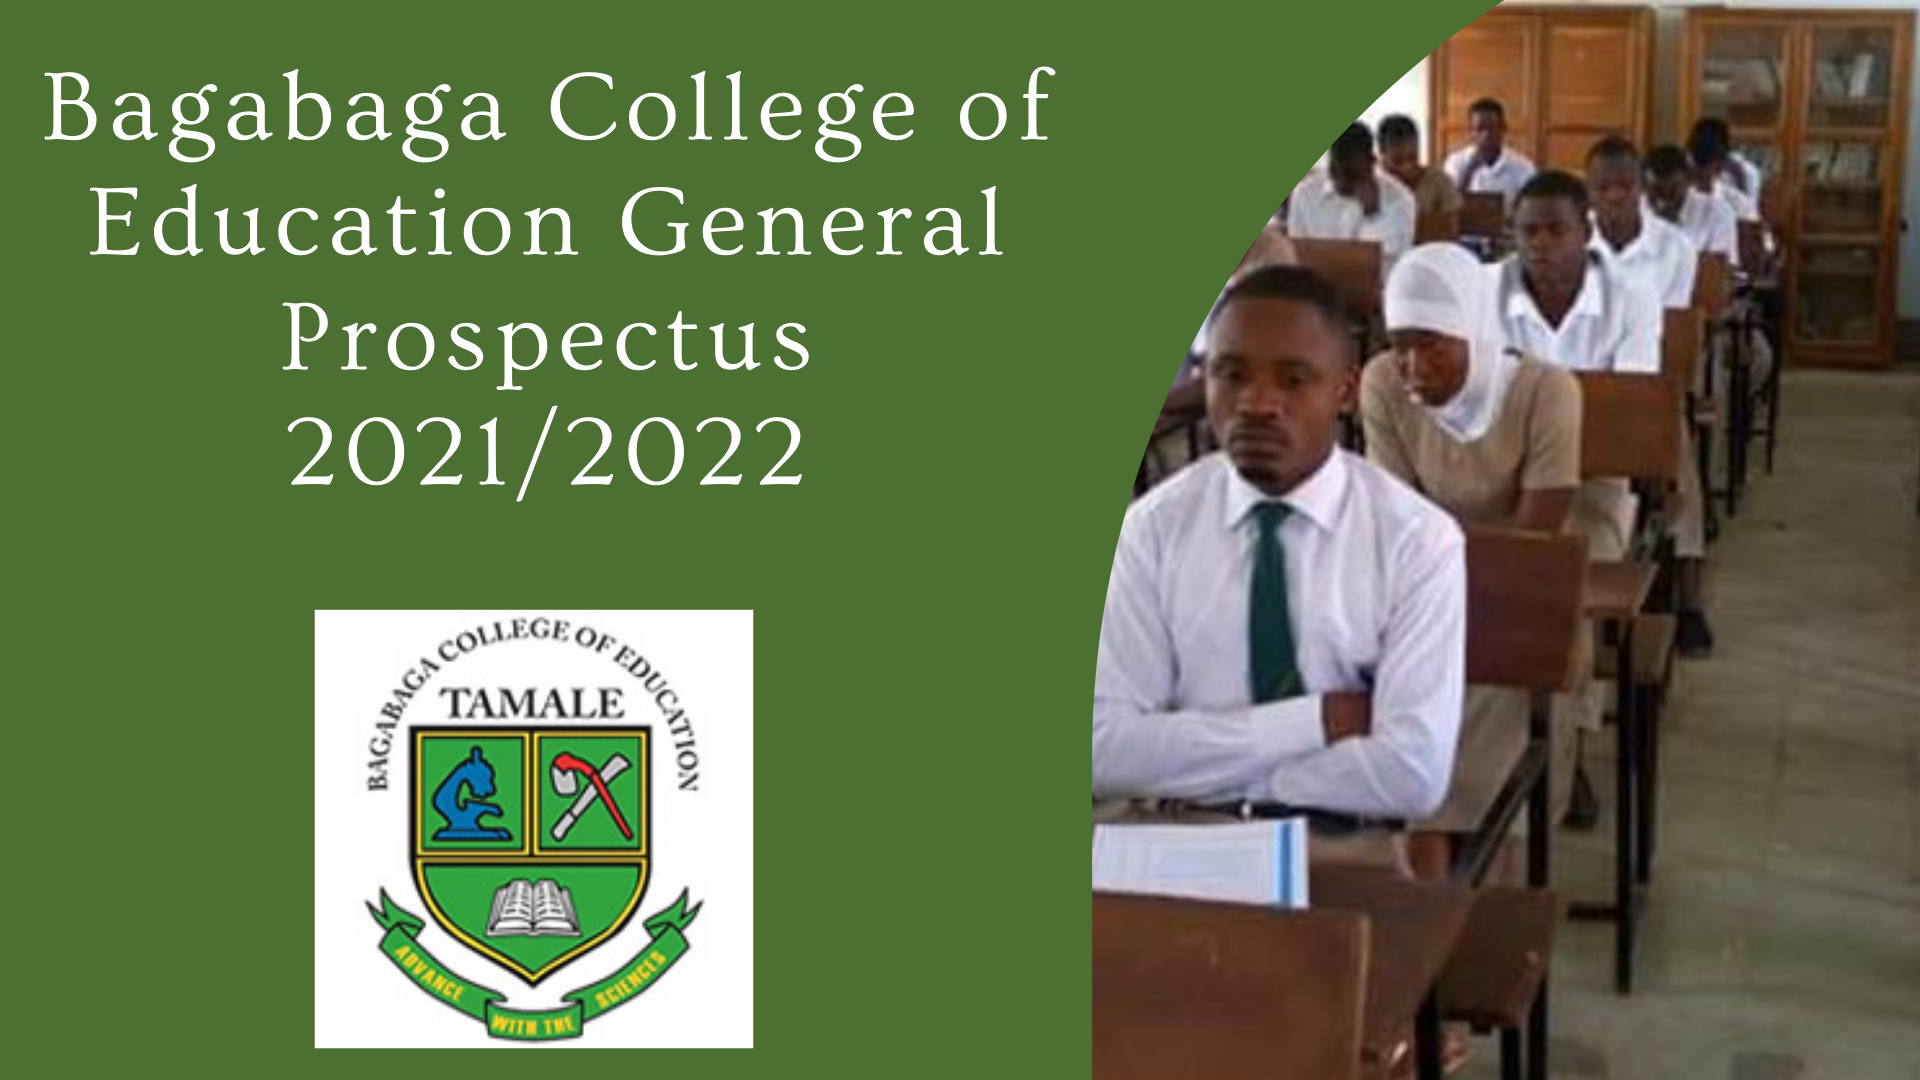 Bagabaga College of Education General Prospectus 2021/2022